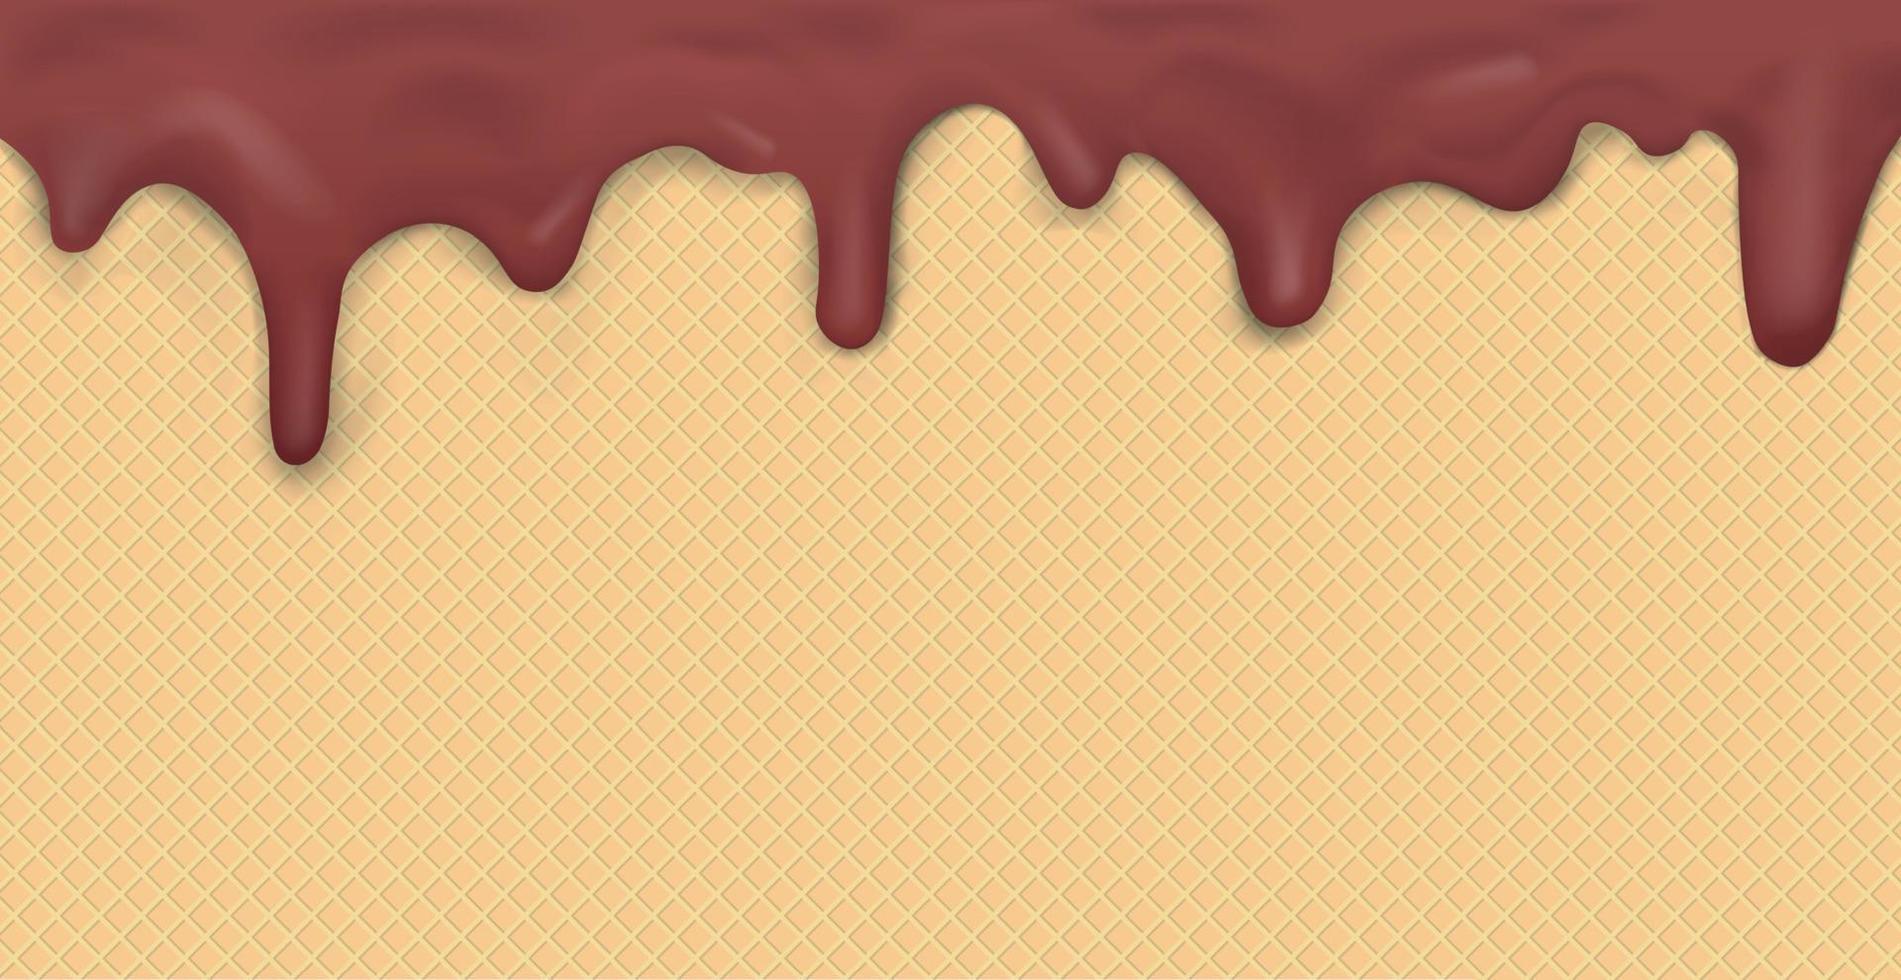 patrón de helado panorámico dulce sin costuras con glaseado de chocolate oscuro goteante y textura de oblea - vector